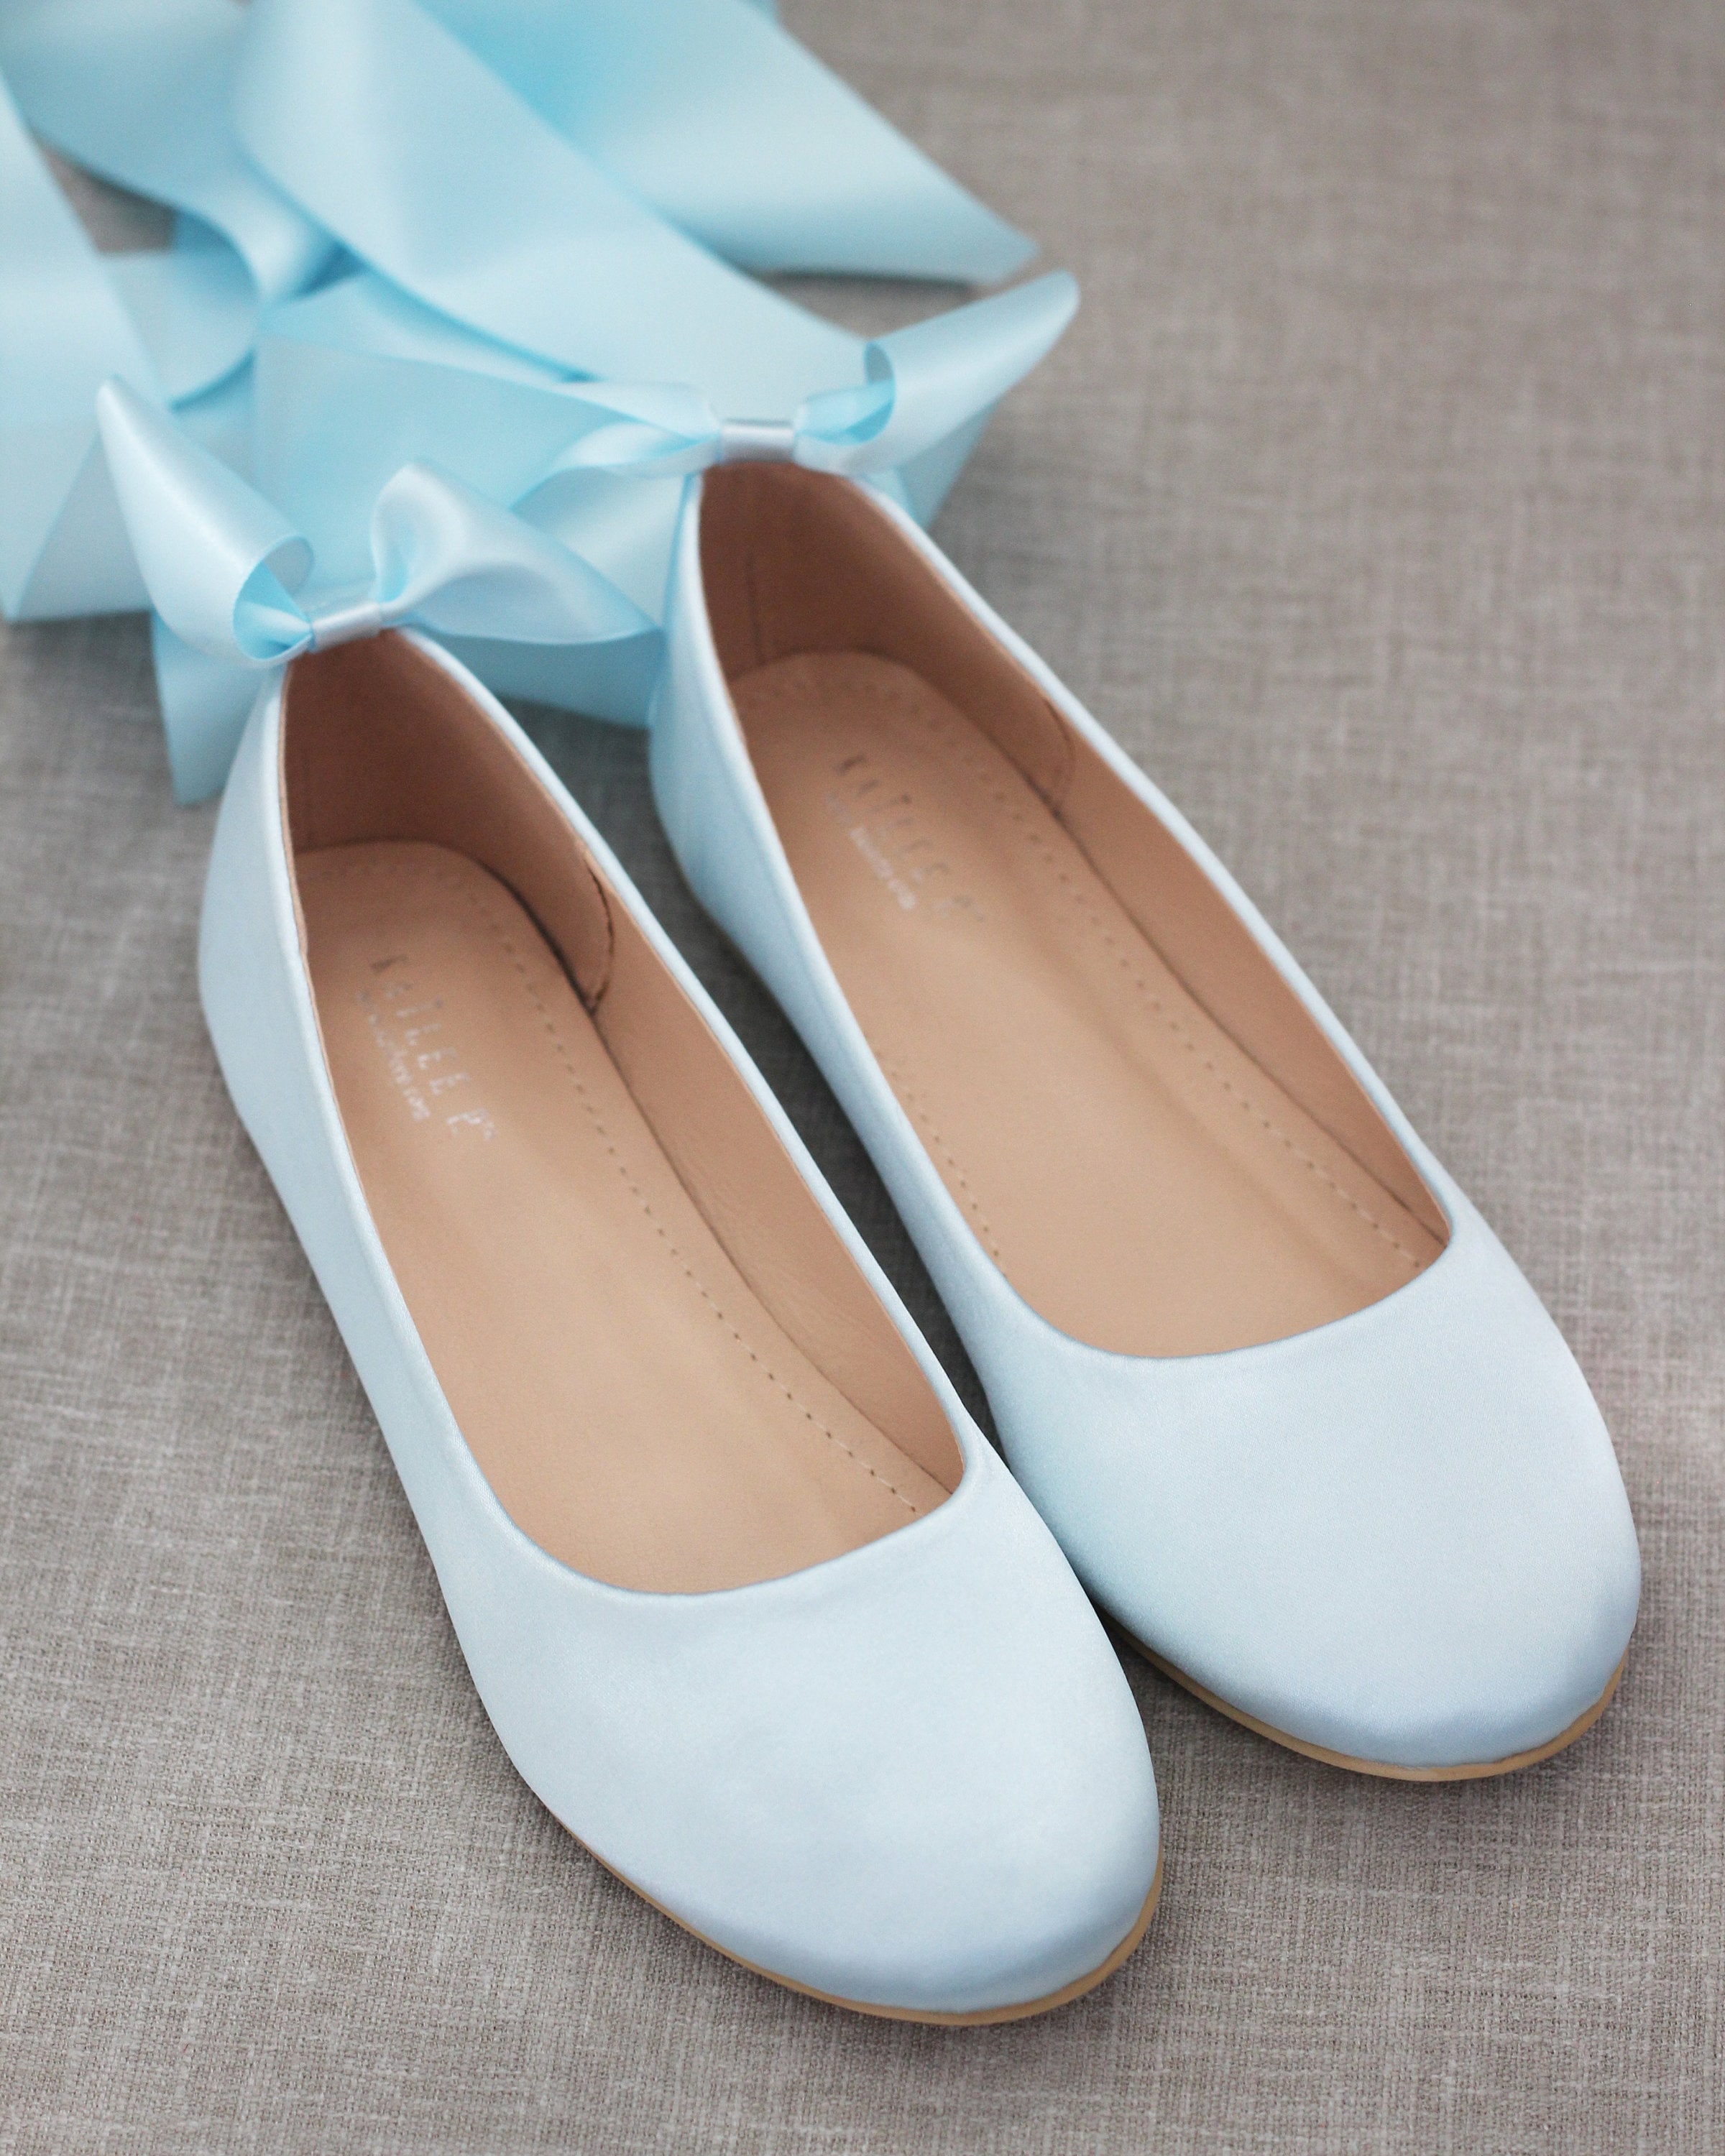 Light Blue Satin Round Toe Flats con MINI RHINESTONES Zapatos de boda clásicos Zapatos Zapatos para mujer Zapatos sin cordones zapatos de novia zapatos de mujer algo azul 